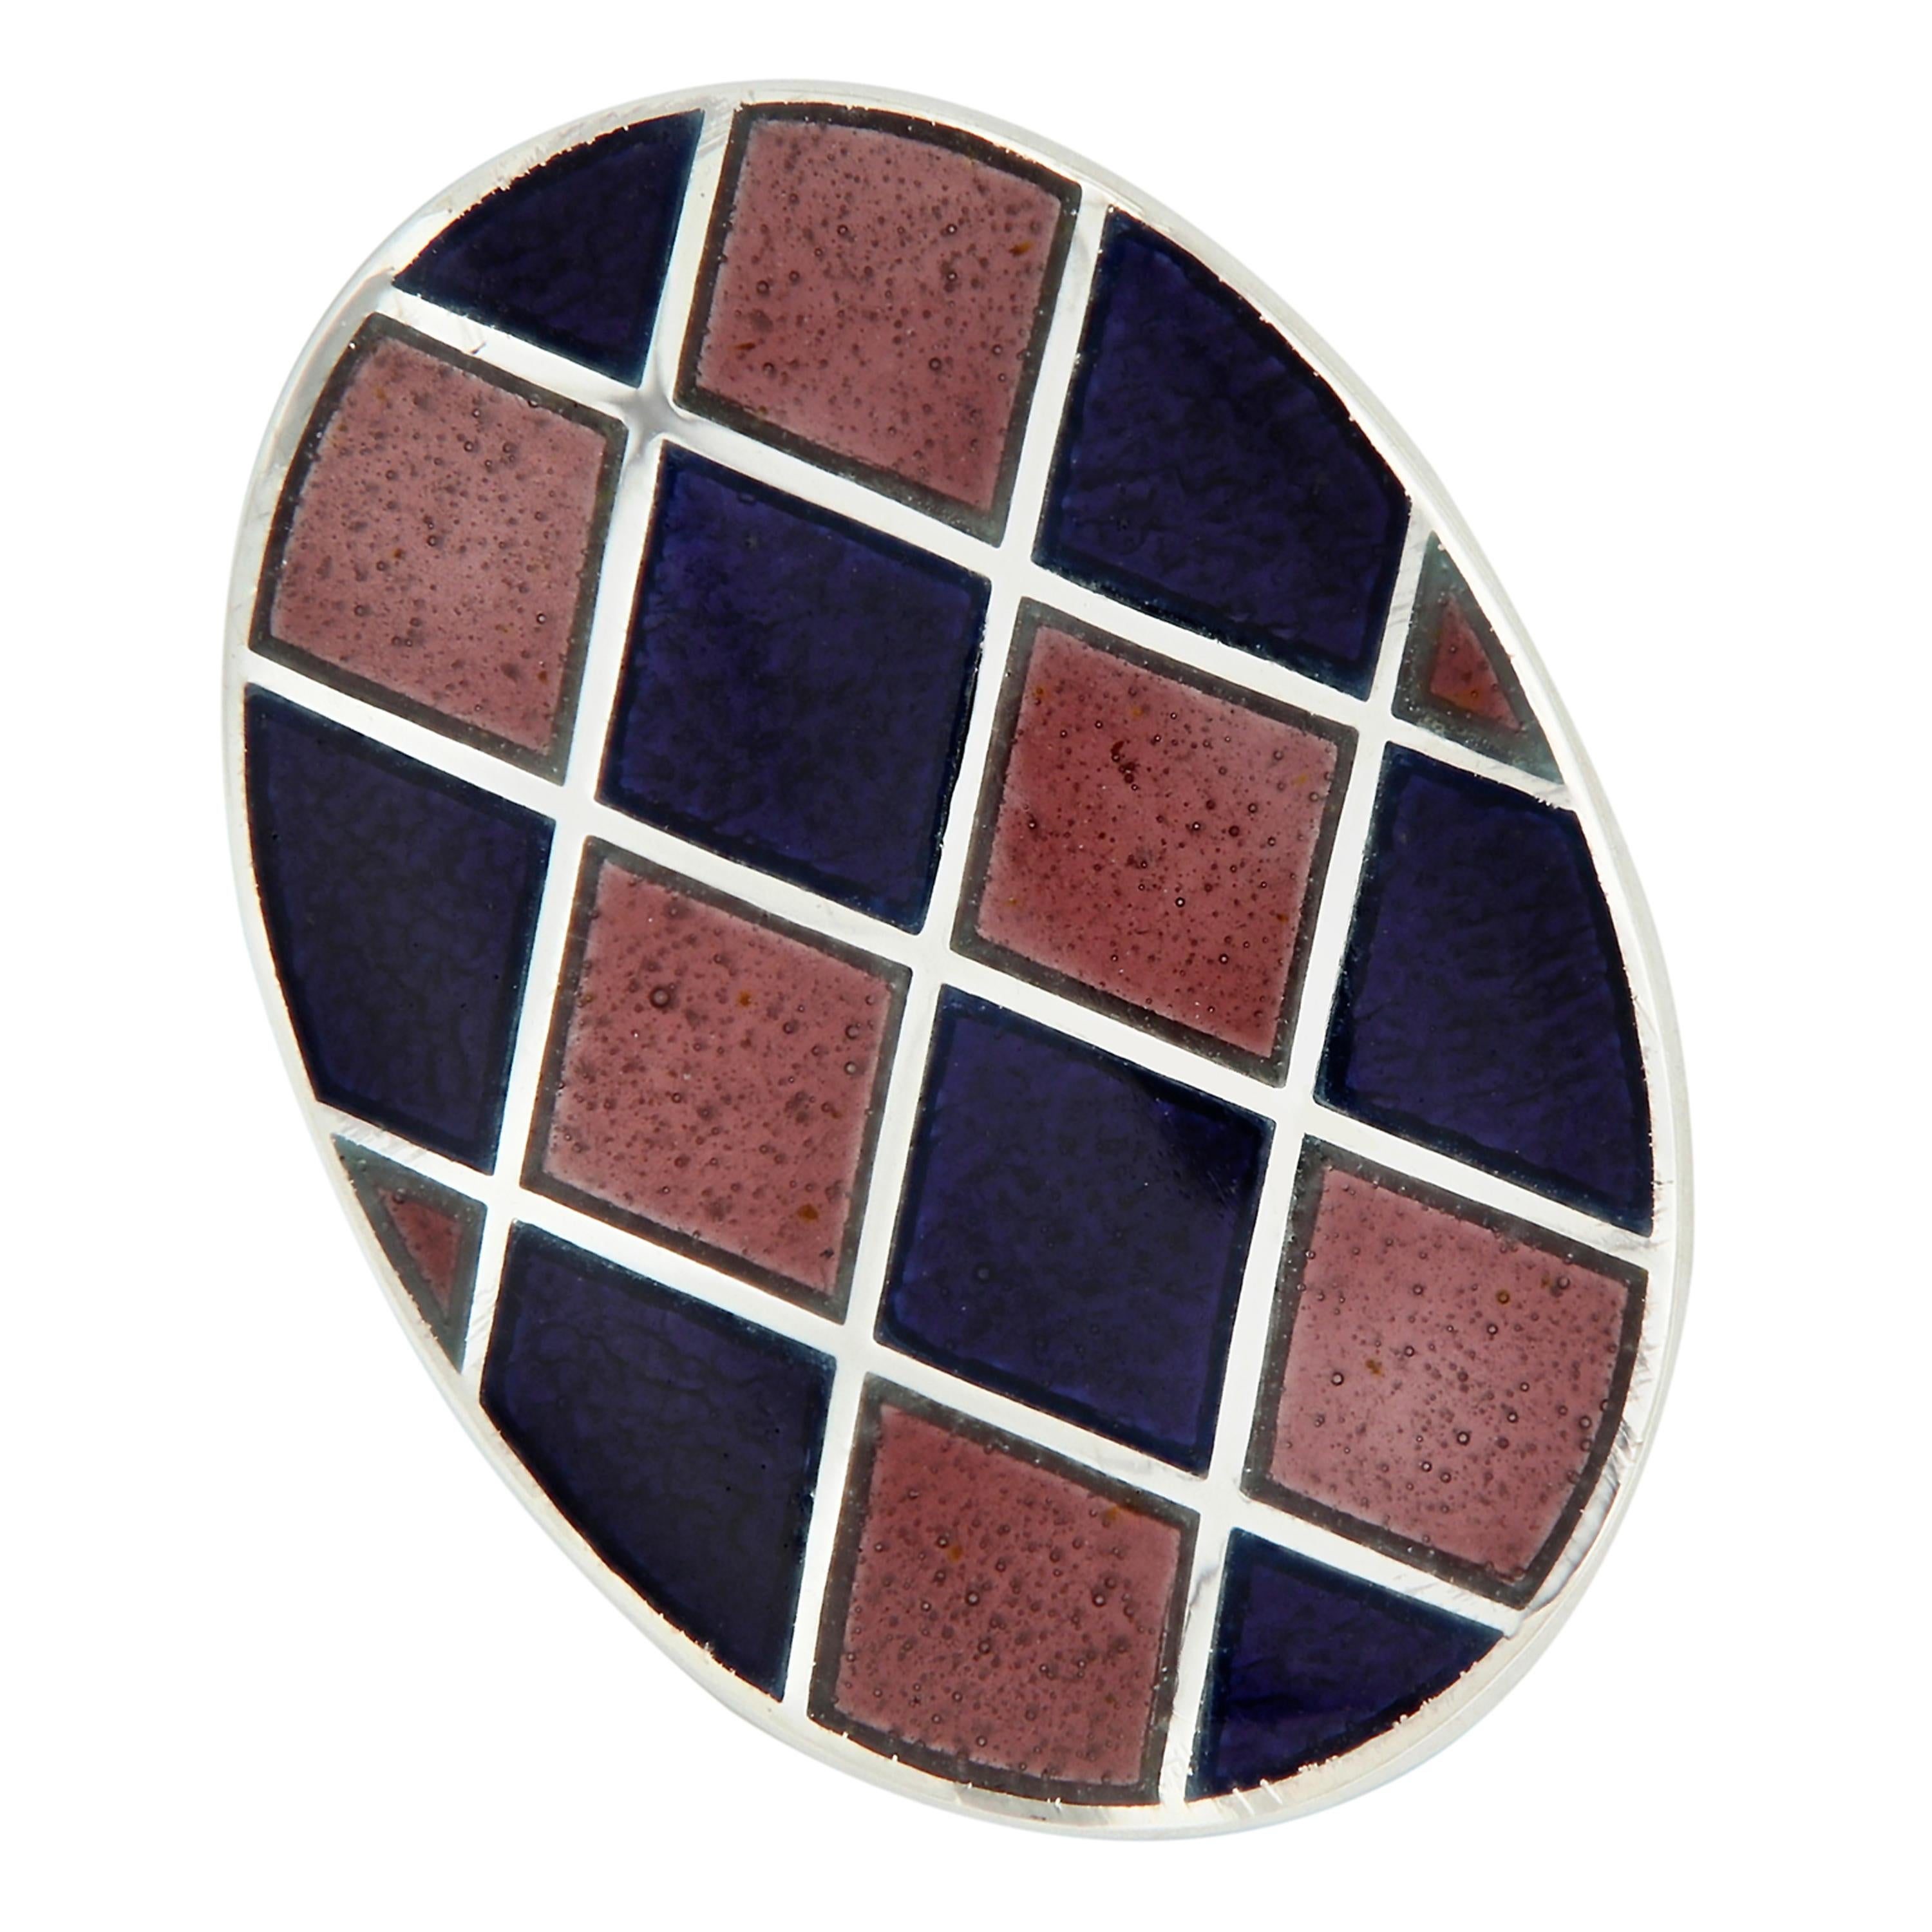 Magnifiques boutons de manchette en émail guilloché au design arlequin. Fabriqué à la main en Angleterre pour Campanelli & Pear. Pèse 12,6 grammes. L'ovale mesure 14 mm x 19 mm.
